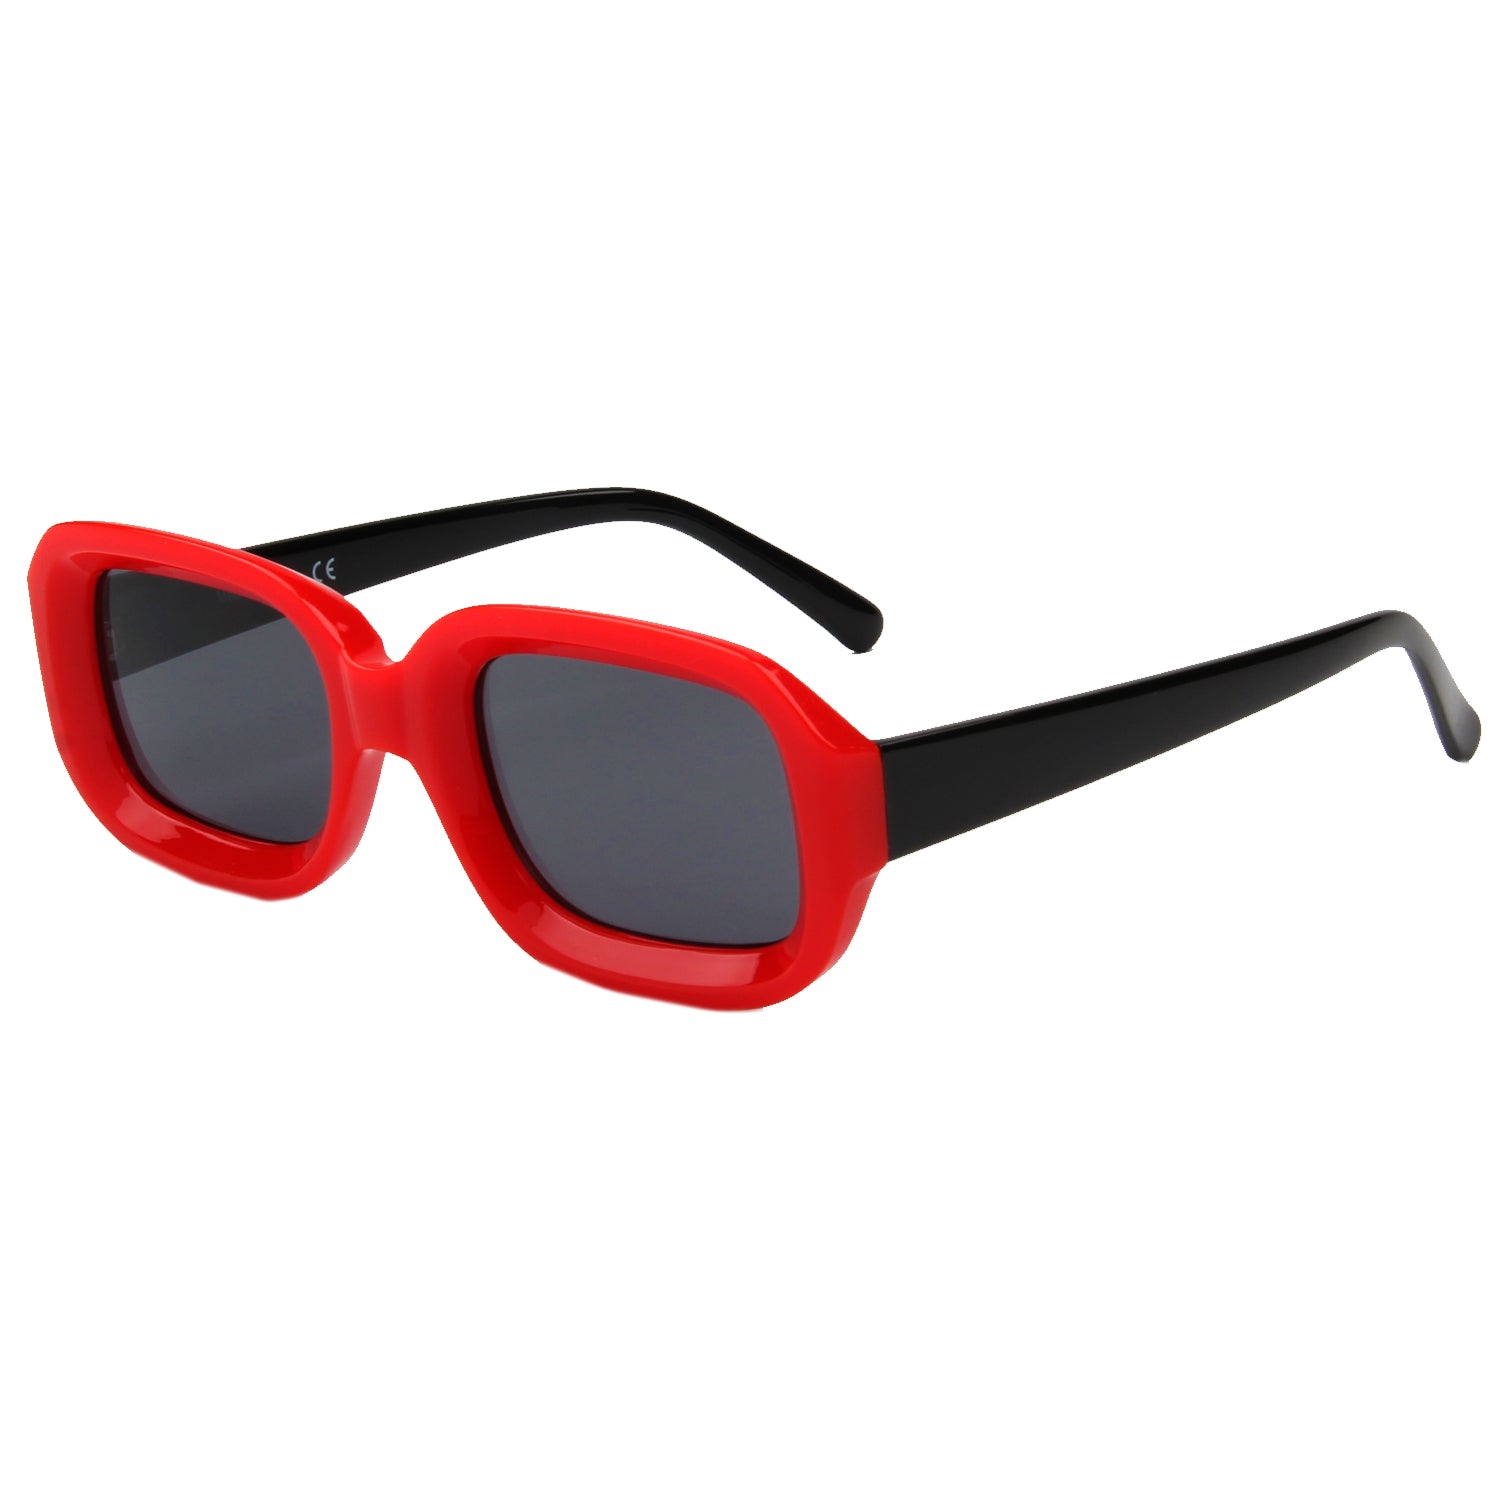 RYLEE Retro Square Sunglasses